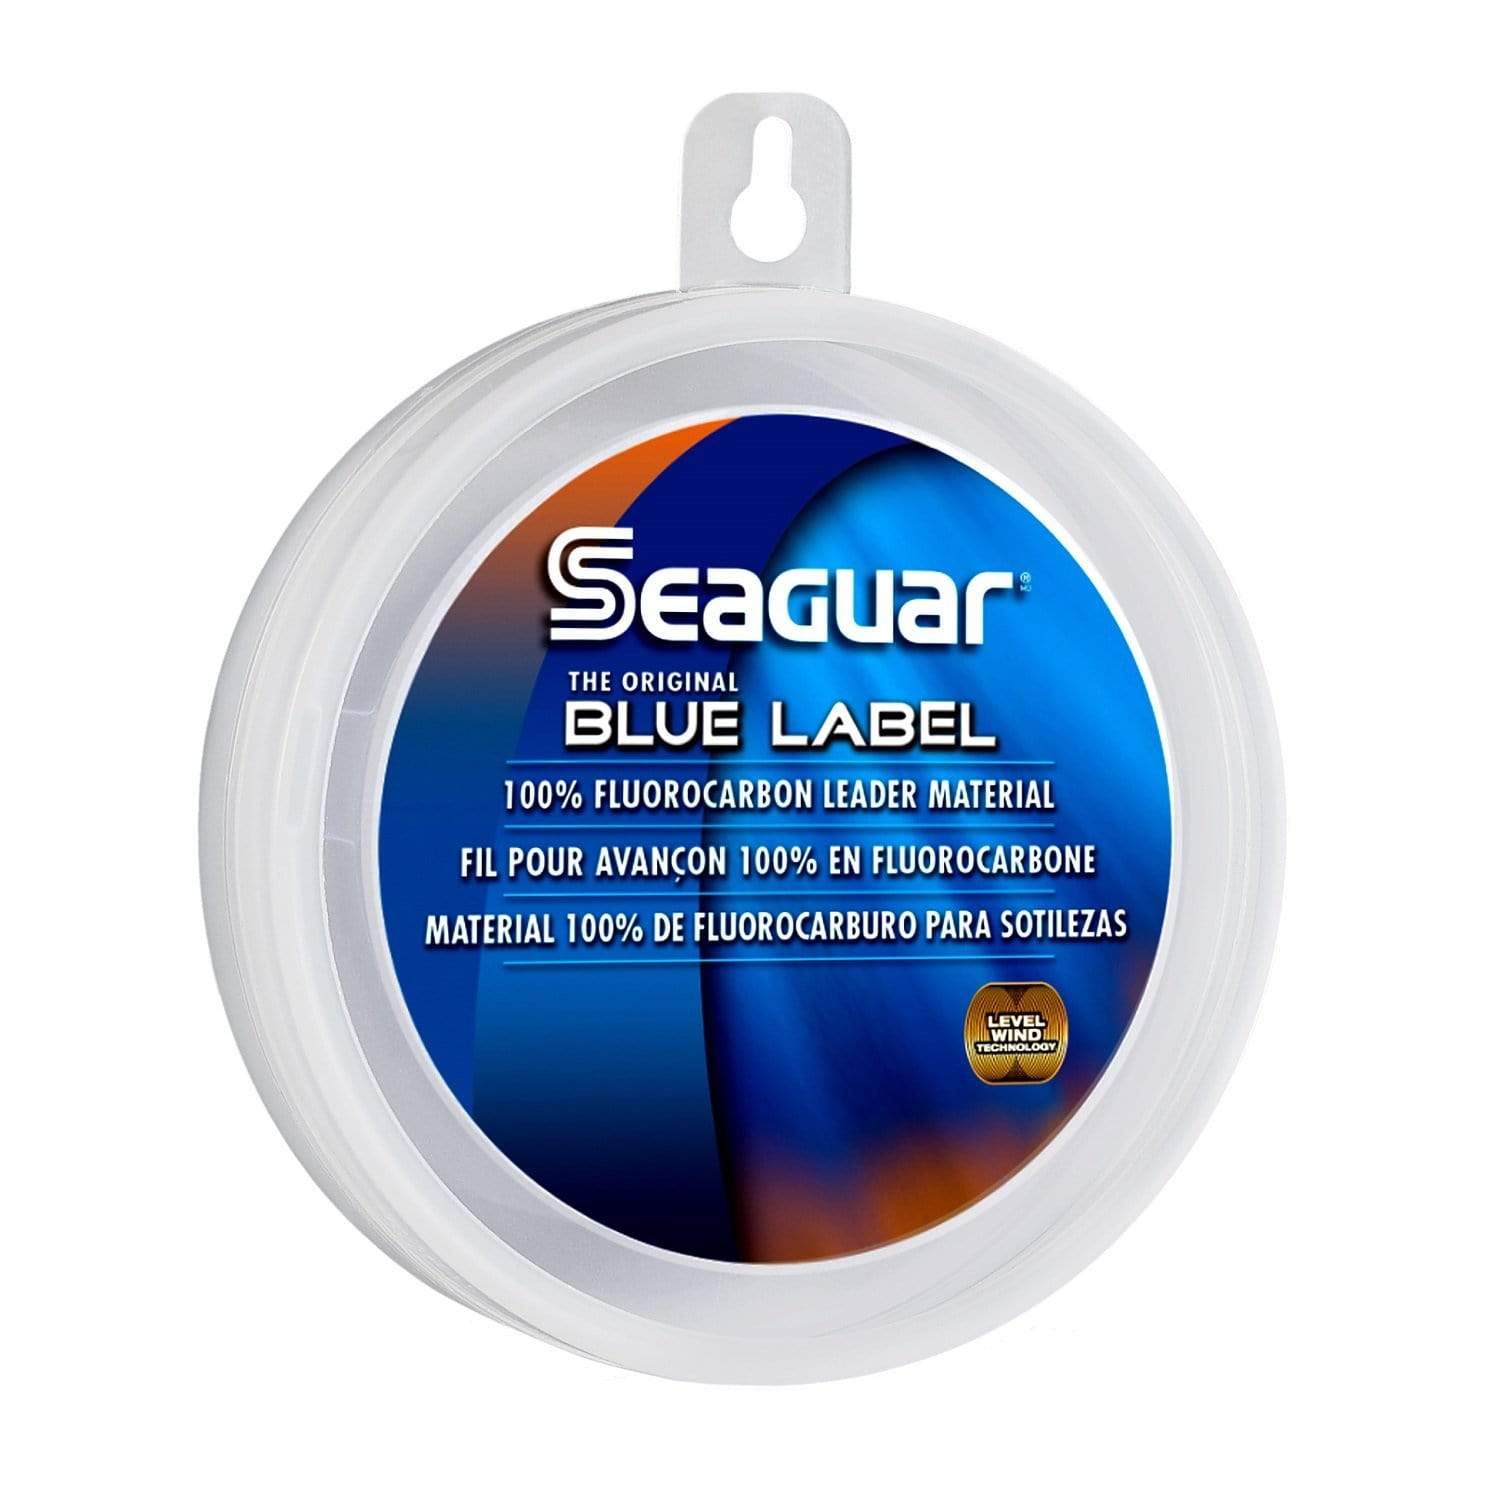 Seaguar Fishing : Line Seaguar Blue Label Fishing Line 100 25LB